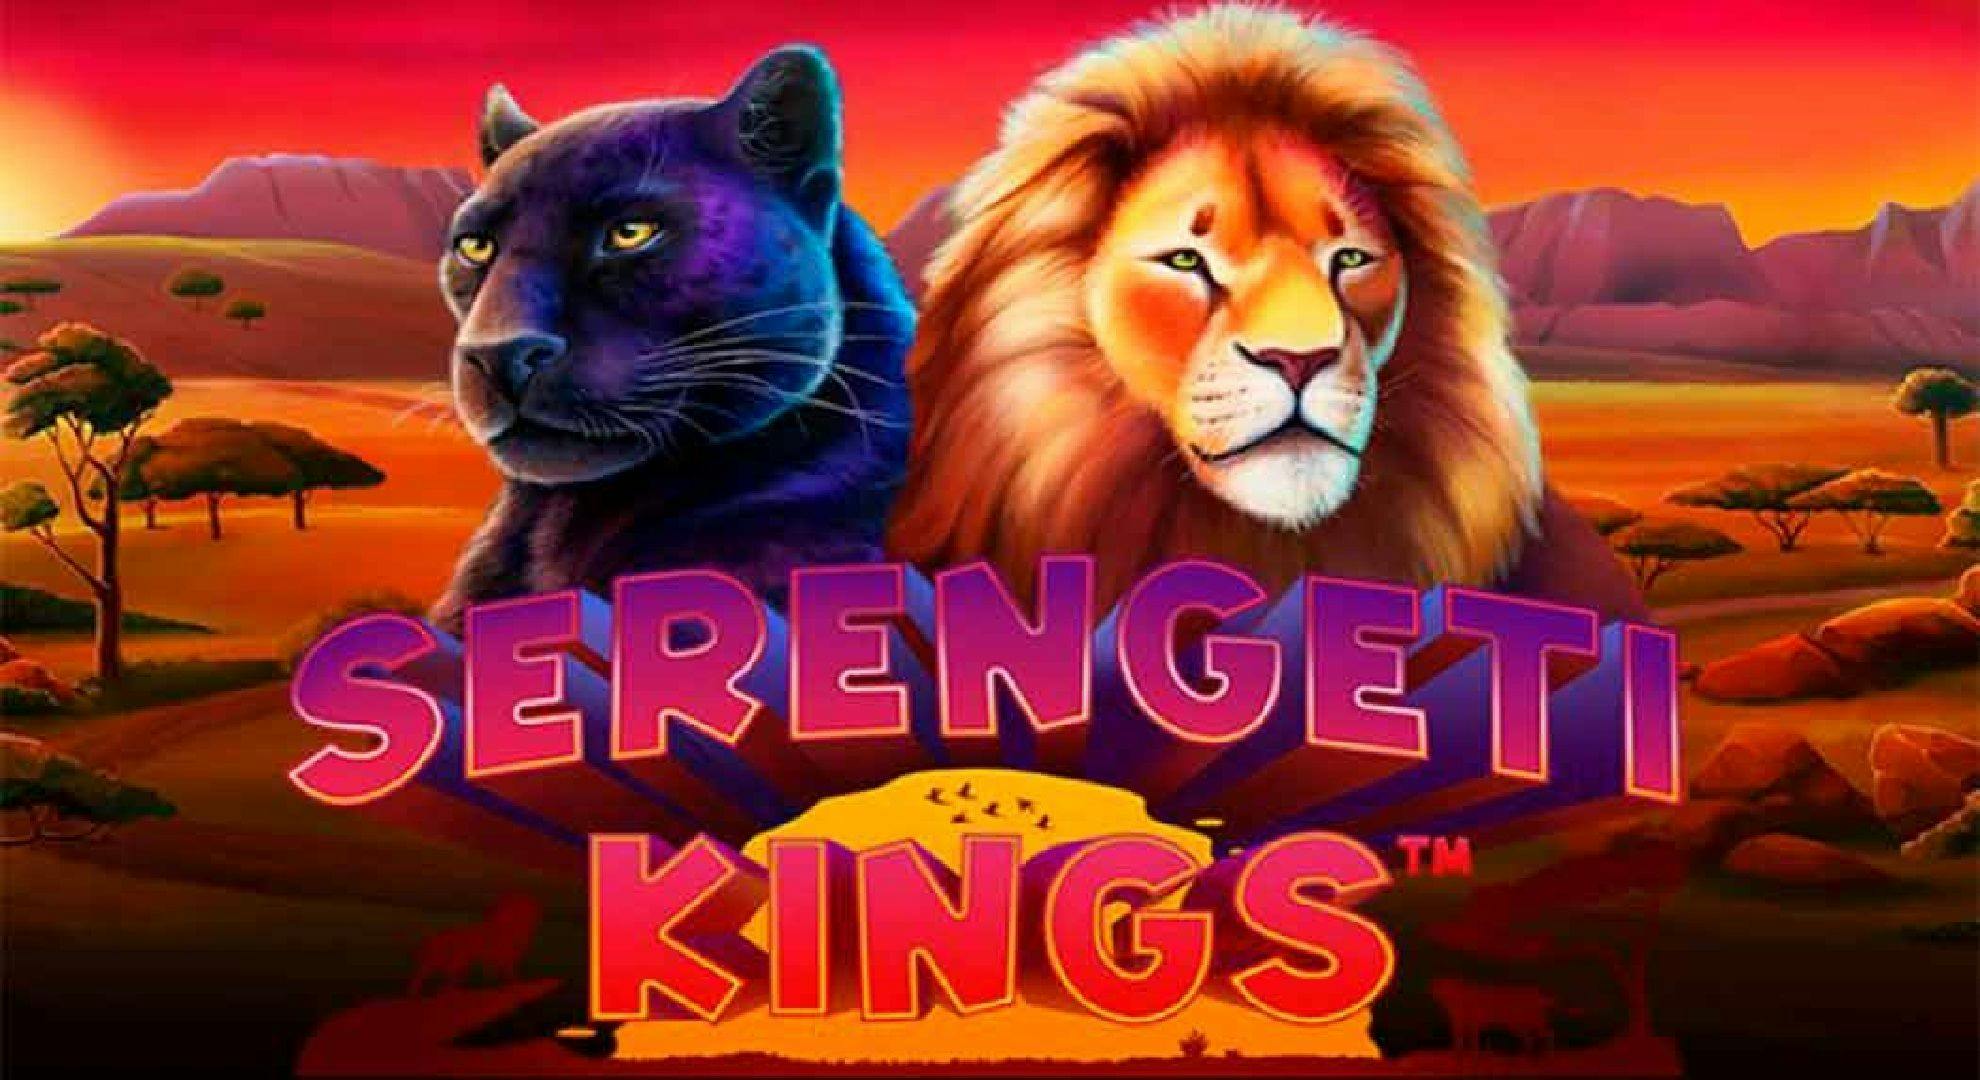 Serengeti Kings Slot Online Free Play